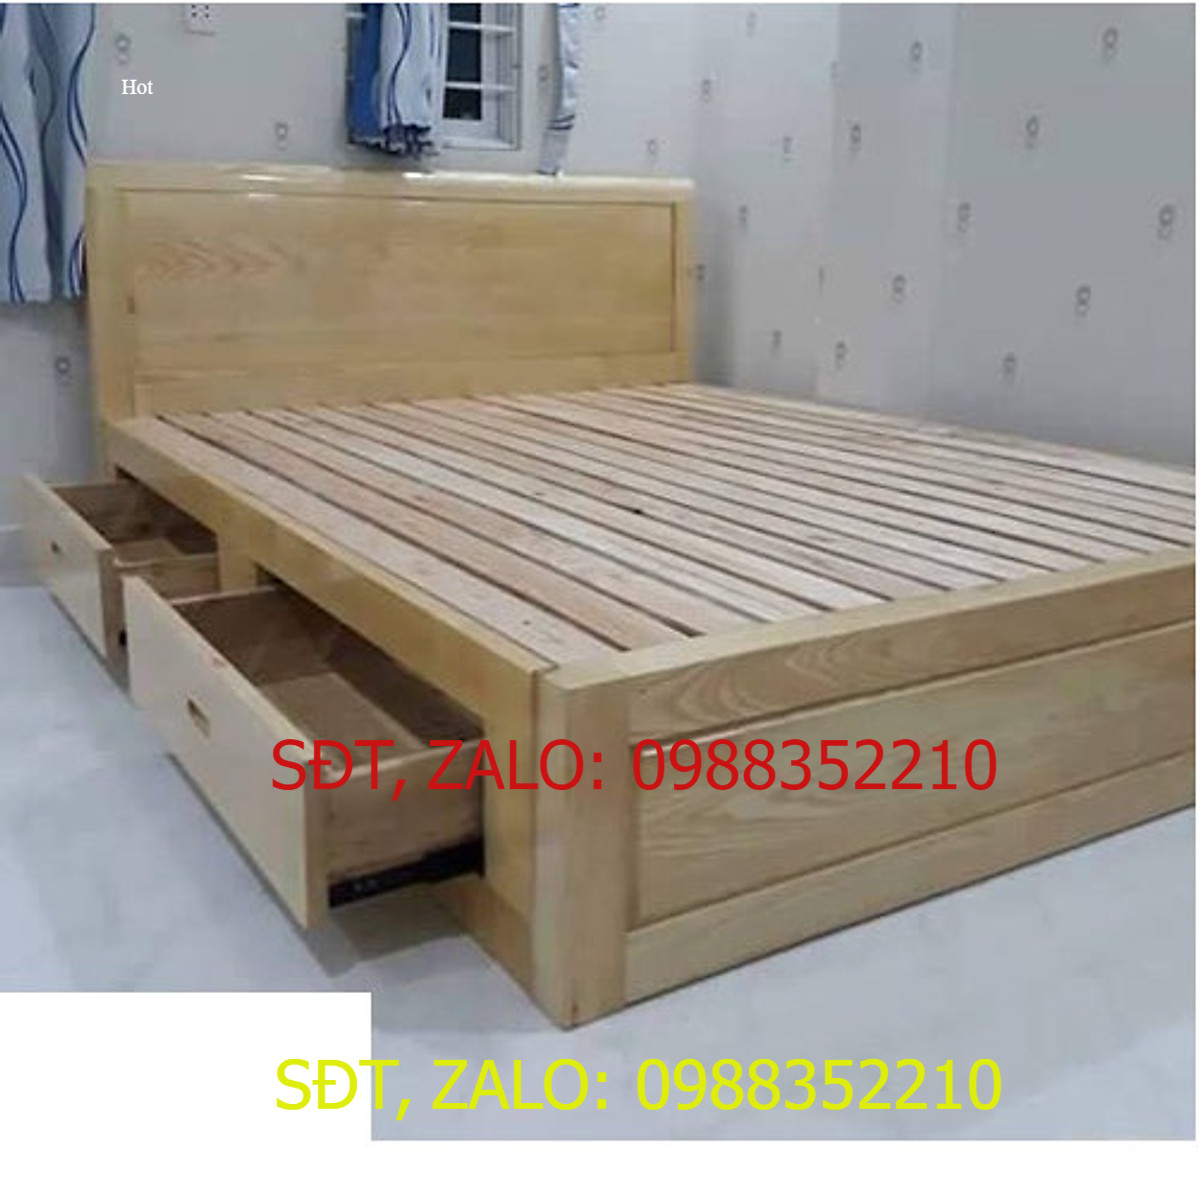 Giường ngủ gỗ sồi ngăn kéo vạt thường, giường gỗ ngăn kéo cao cấp